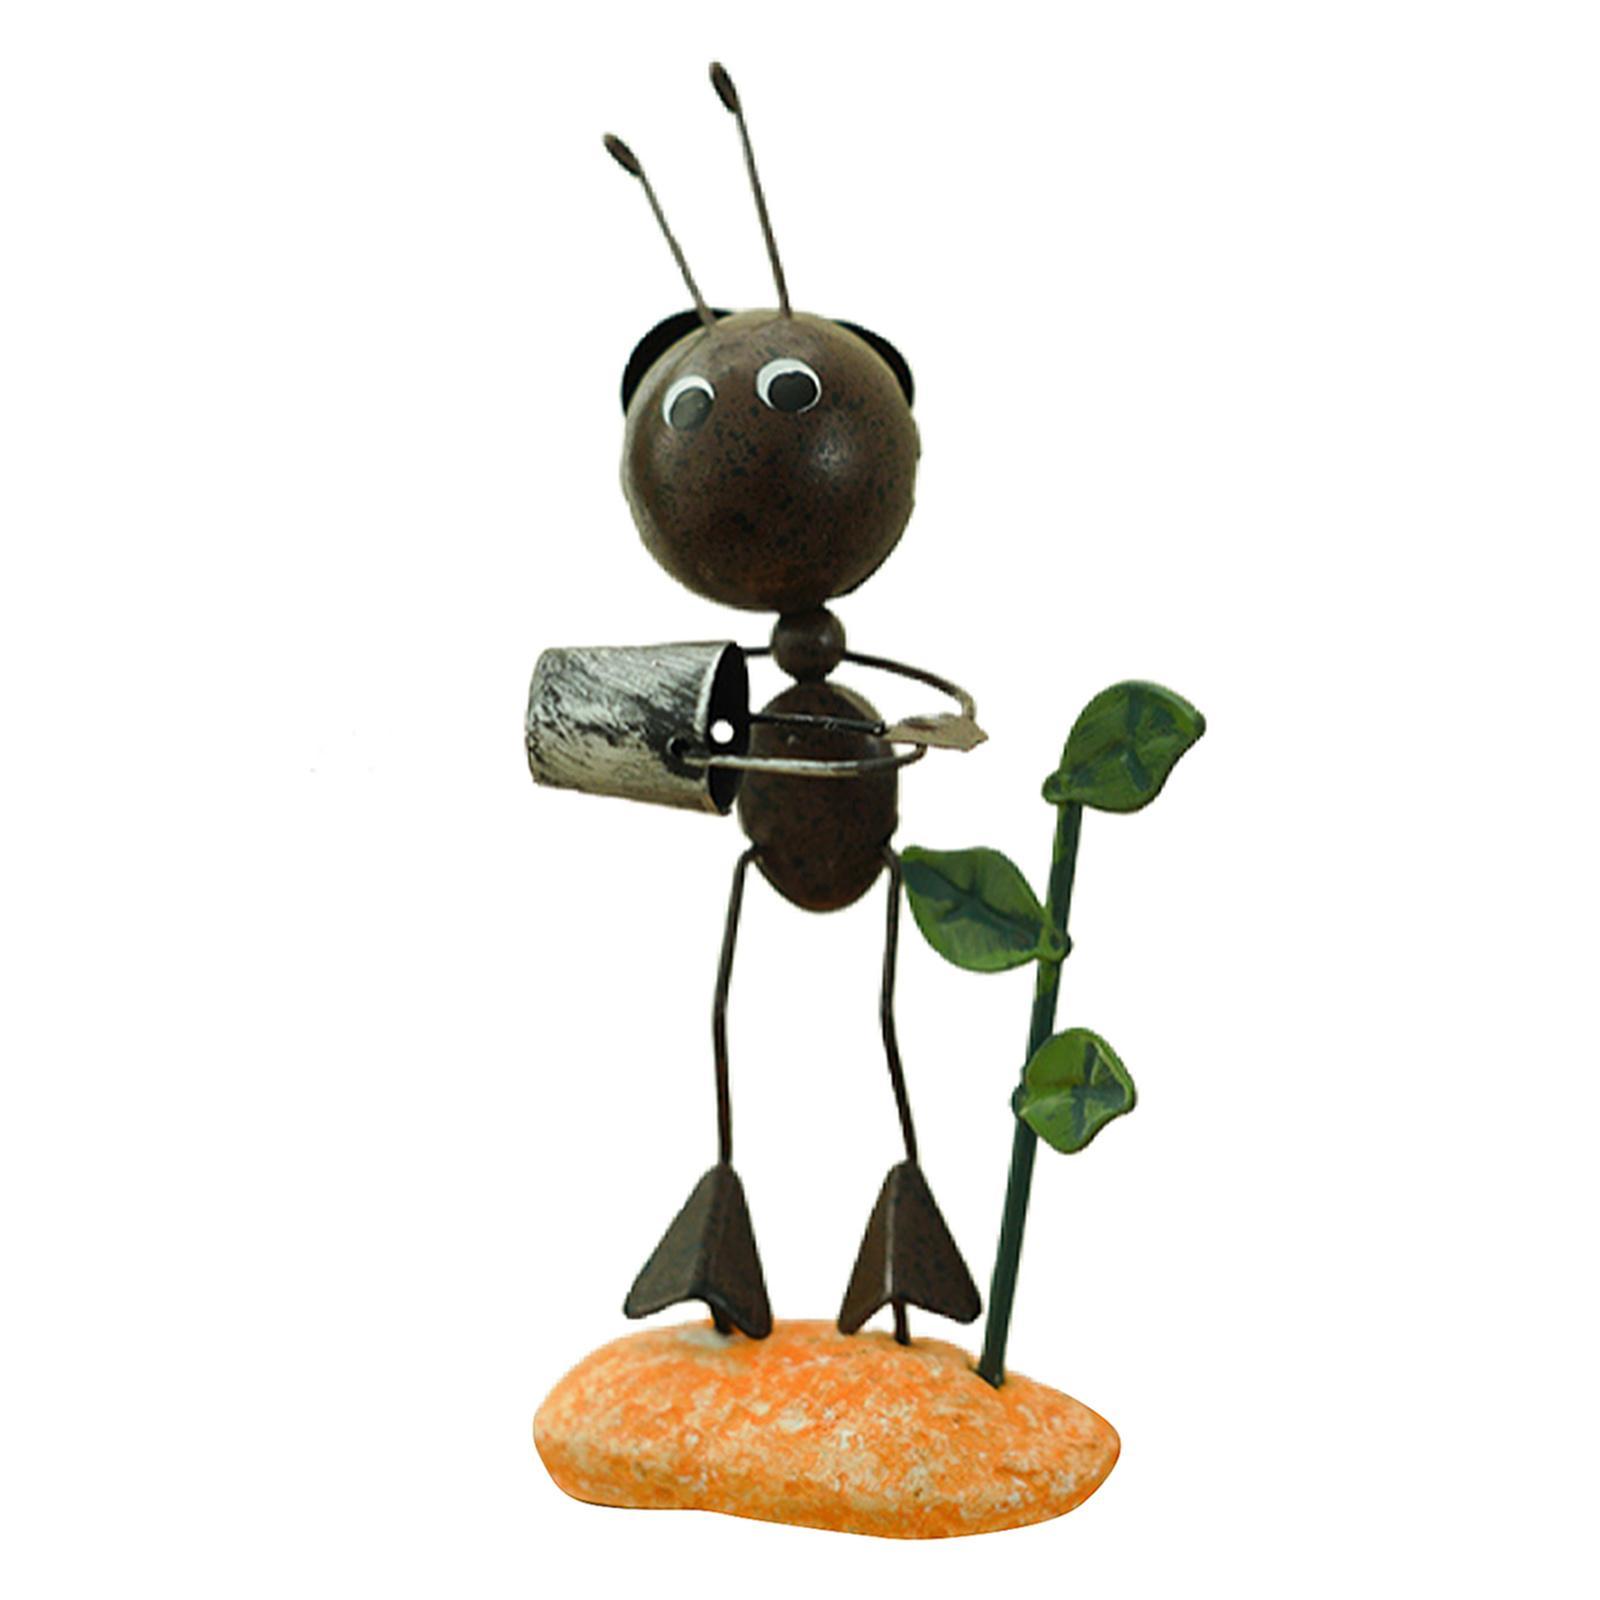 Hình ảnh 2 Pieces Ant Figurine Statue Home Office Desktop Decor